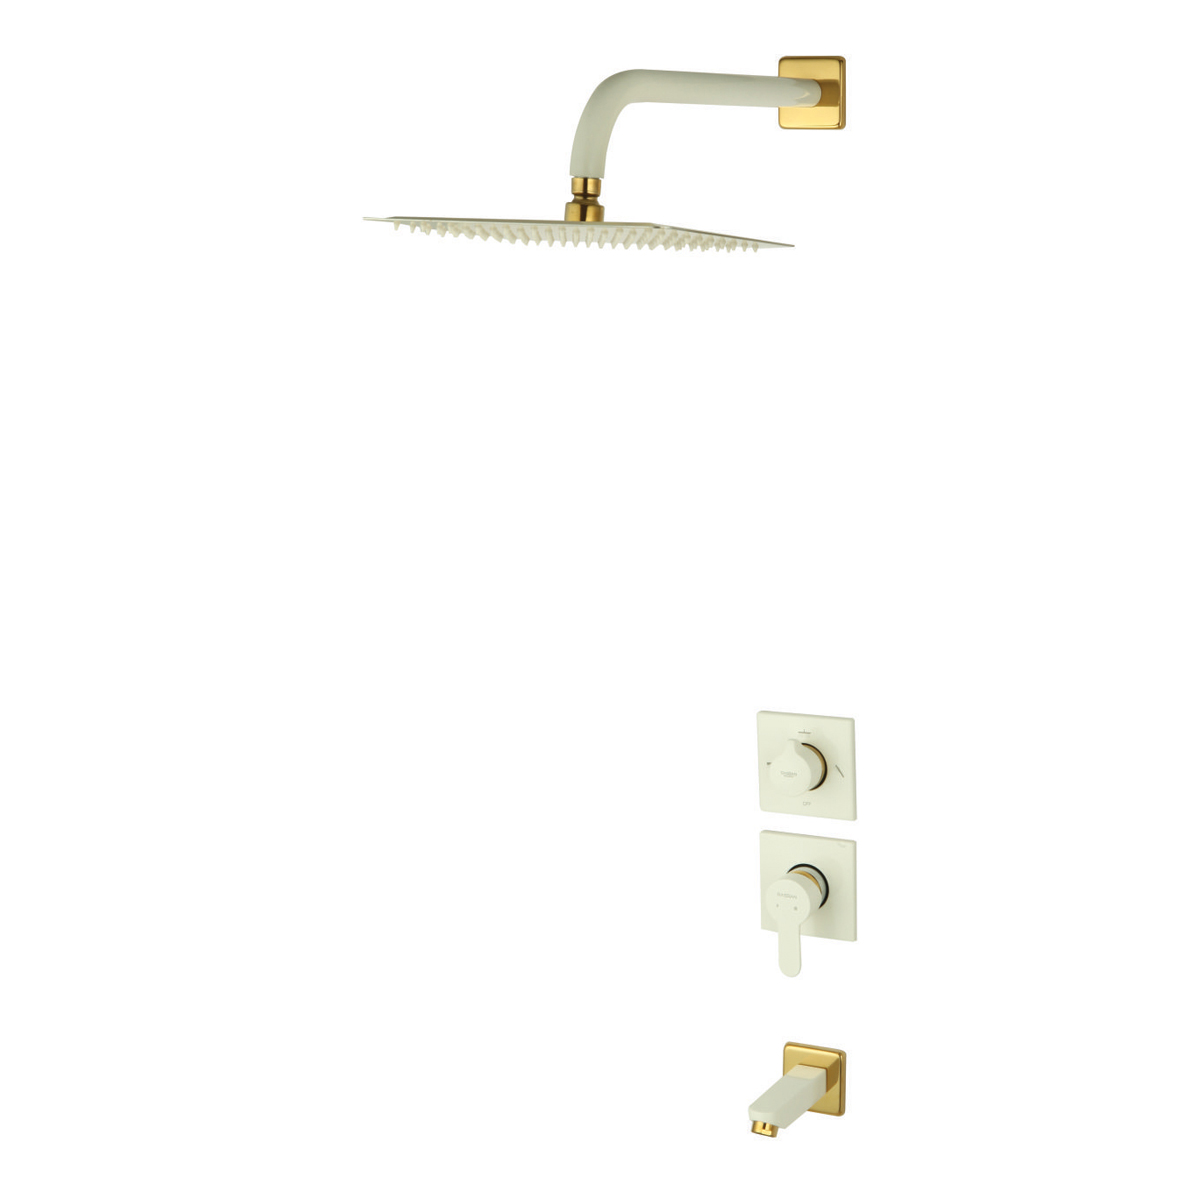 ملحقات شیر حمام توکار ویوات راسان مدل فلت کلاس (2) سفید طلایی